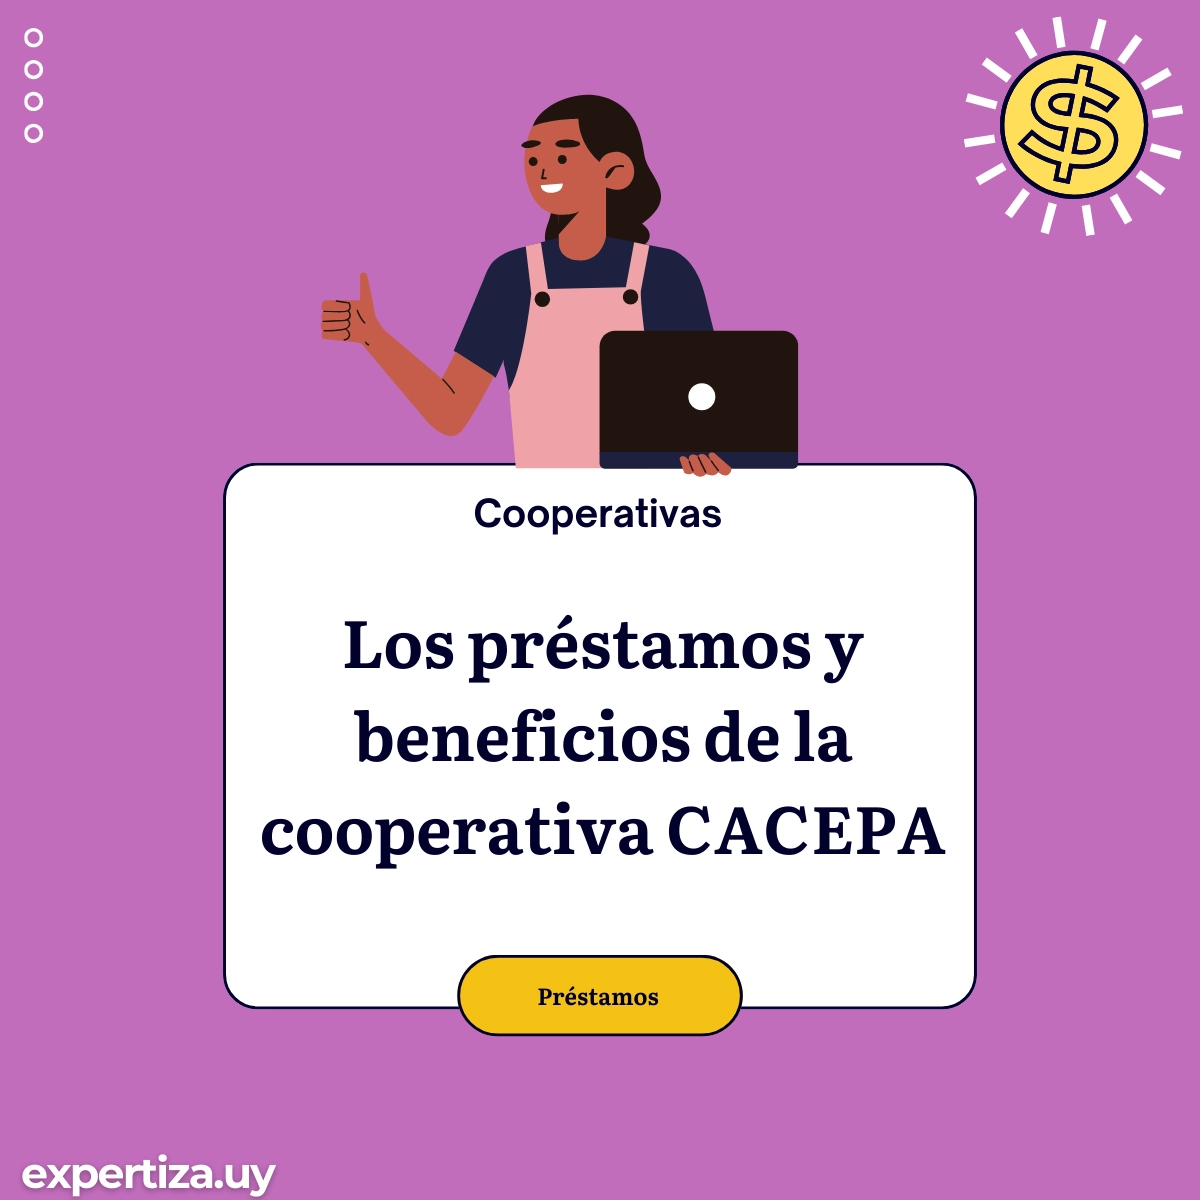 Los préstamos y beneficios de la cooperativa CACEPA